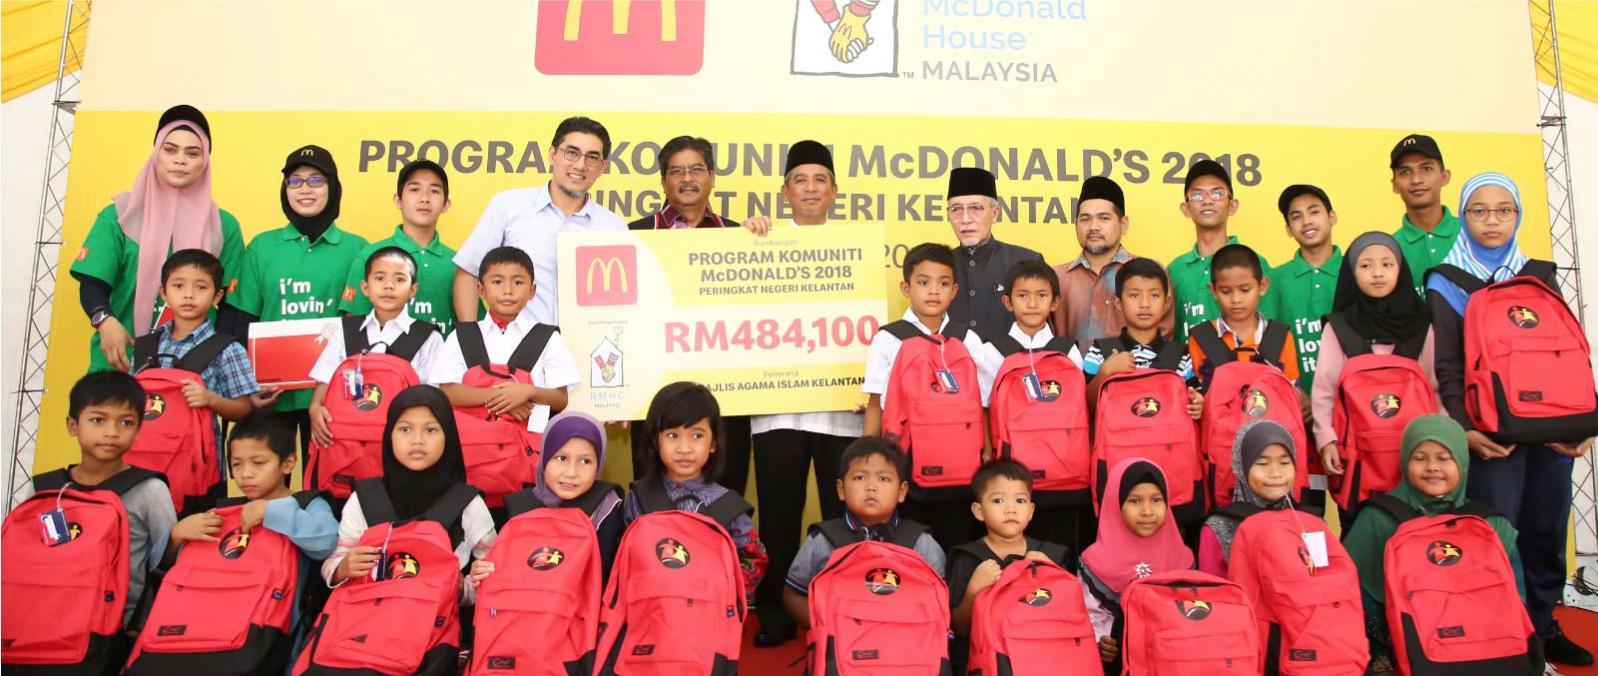 McDonald's Malaysia teruskan inisiatif kemasyarakatan ke pantai timur's image'